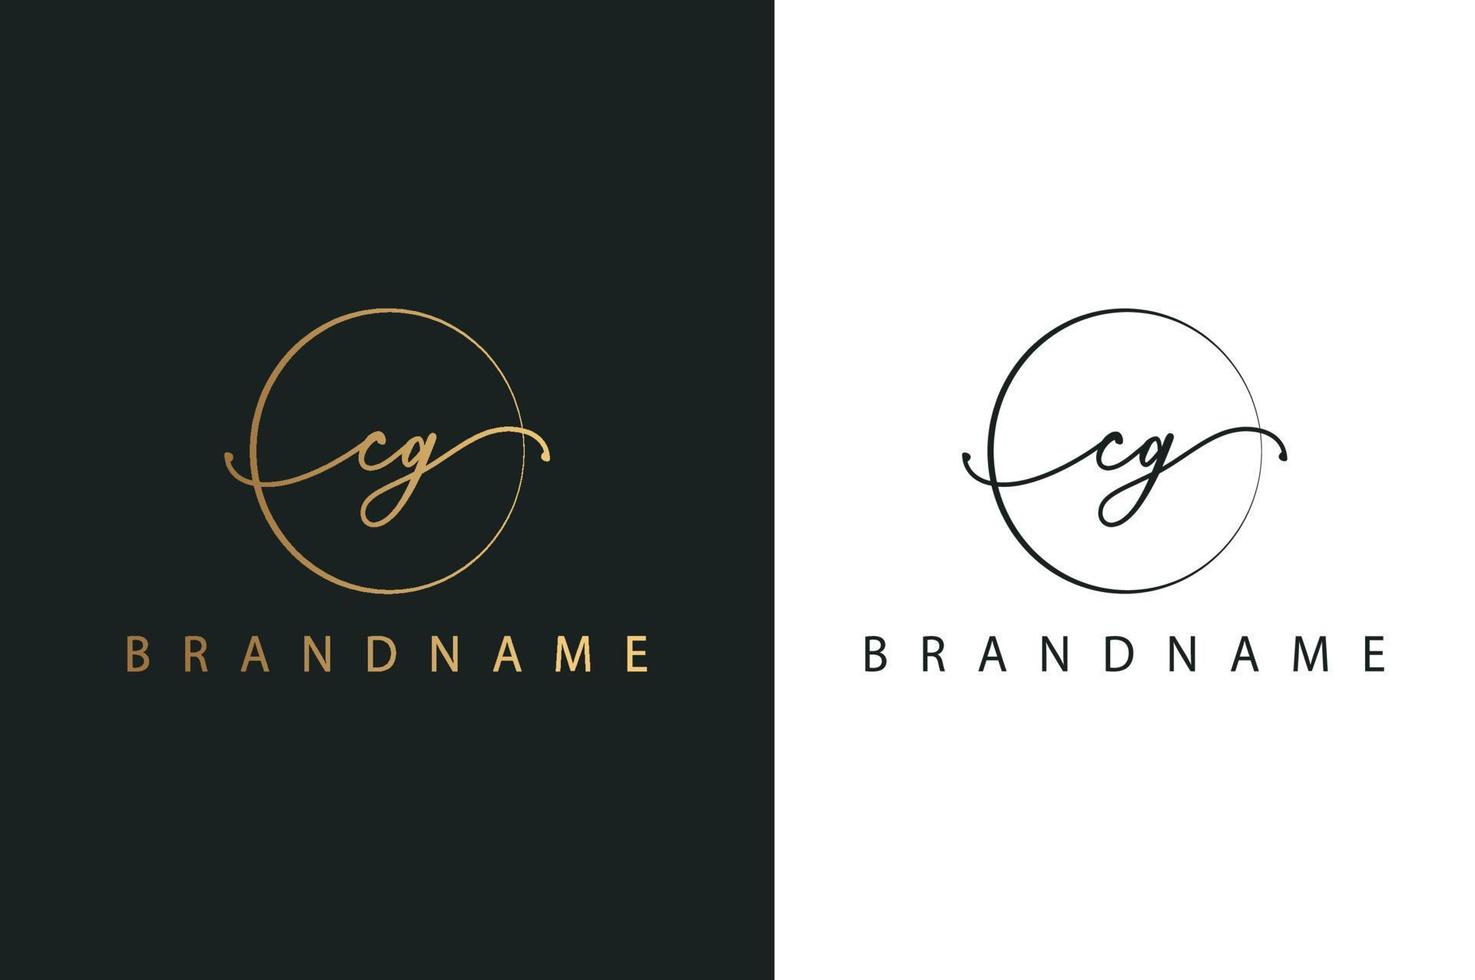 cg cg logo disegnato a mano di firma iniziale, moda, gioielli, fotografia, boutique, sceneggiatura, matrimonio, modello di logo vettoriale creativo floreale e botanico per qualsiasi azienda o azienda.